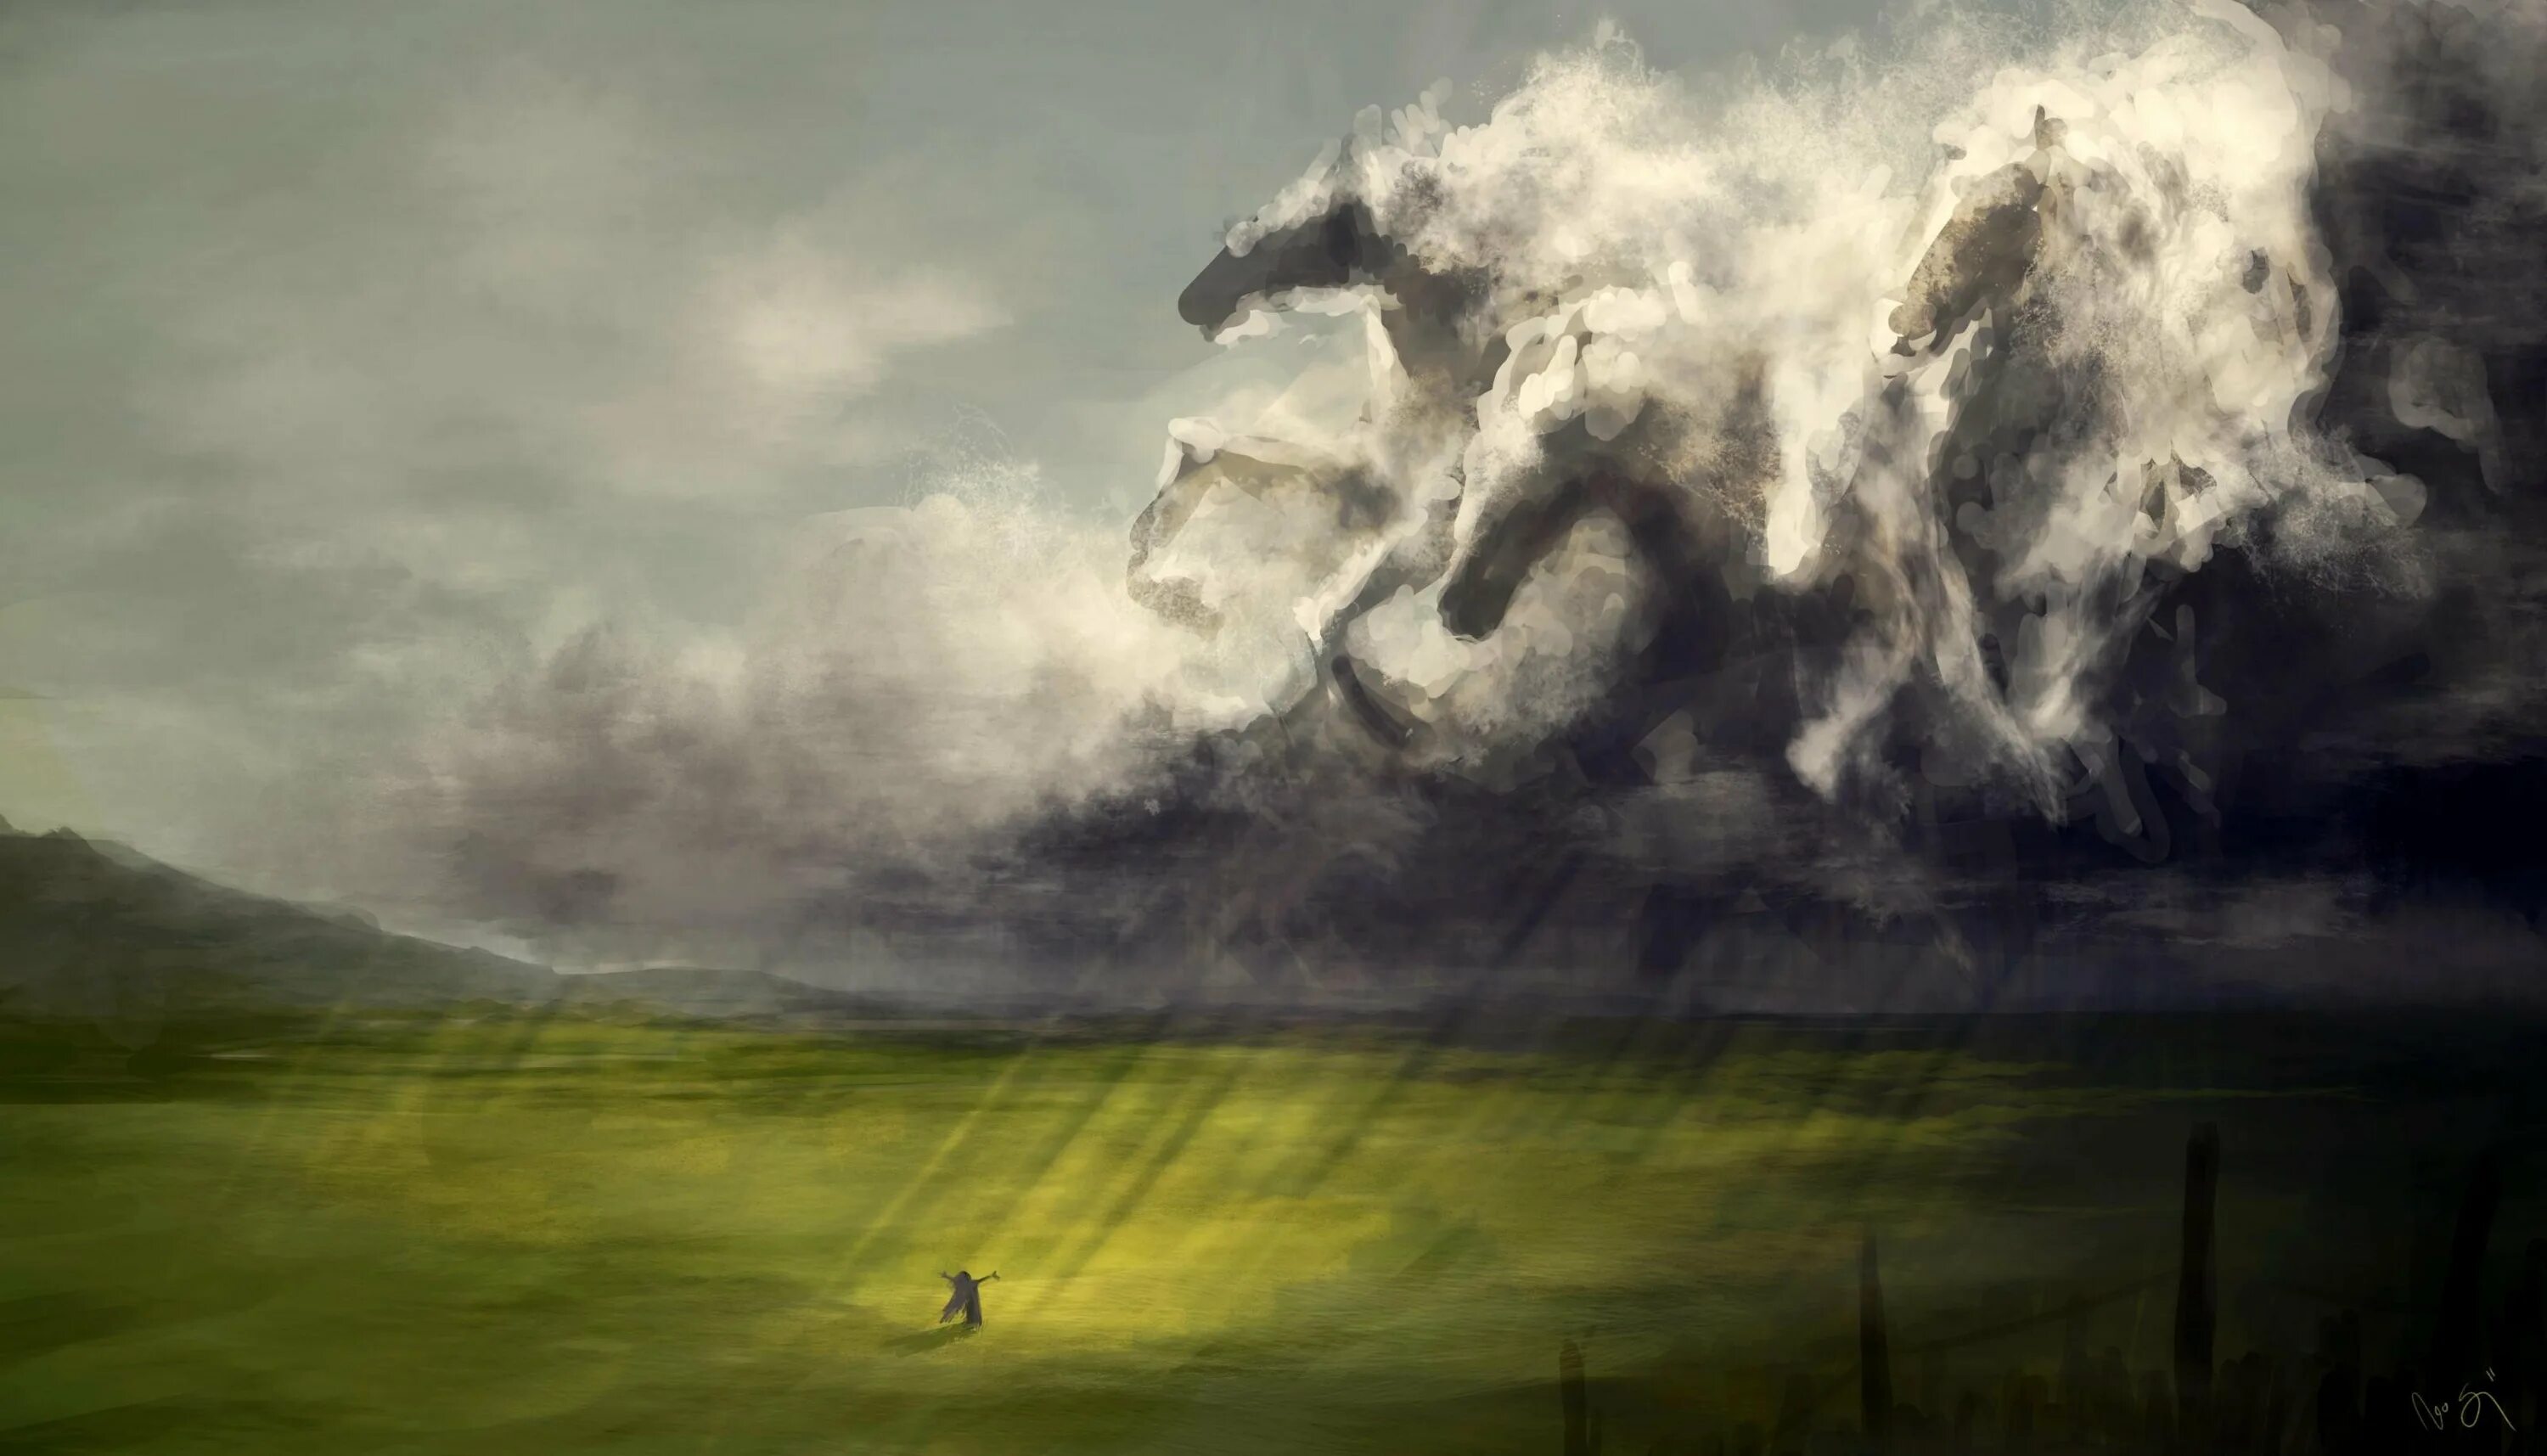 Легкая пыль несется по дороге далеко. Грозовые тучи. Лошадь в тумане. Пейзаж буря. Гроза и ветер.